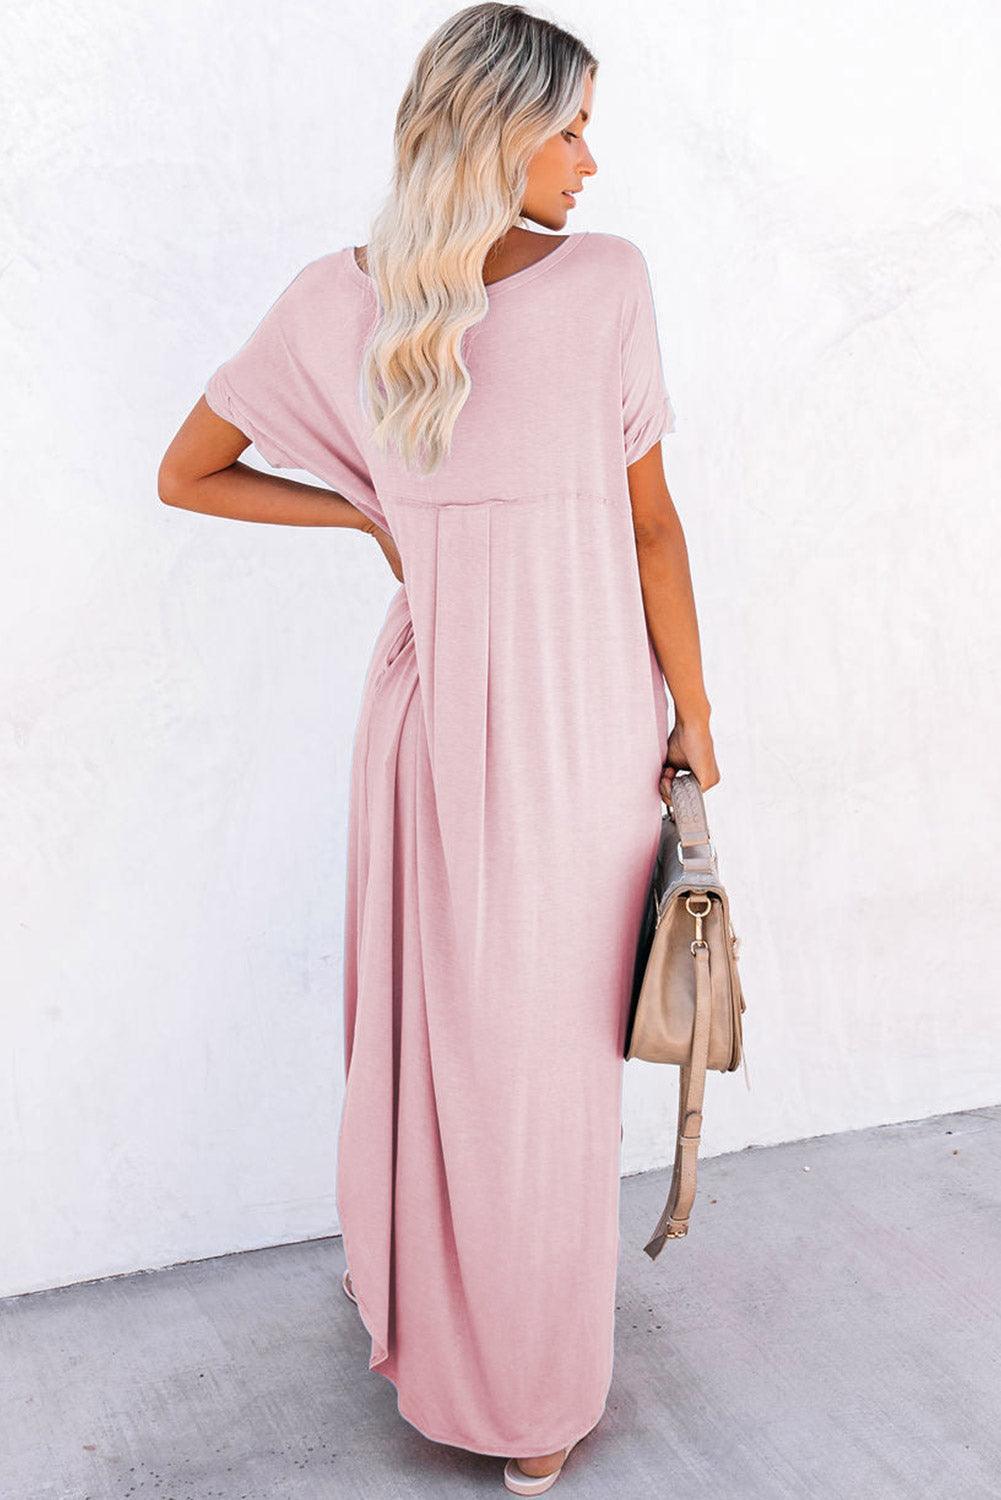 Pink Solid Color Hidden Pocket V Neck Slit Maxi Dress - Ninonine